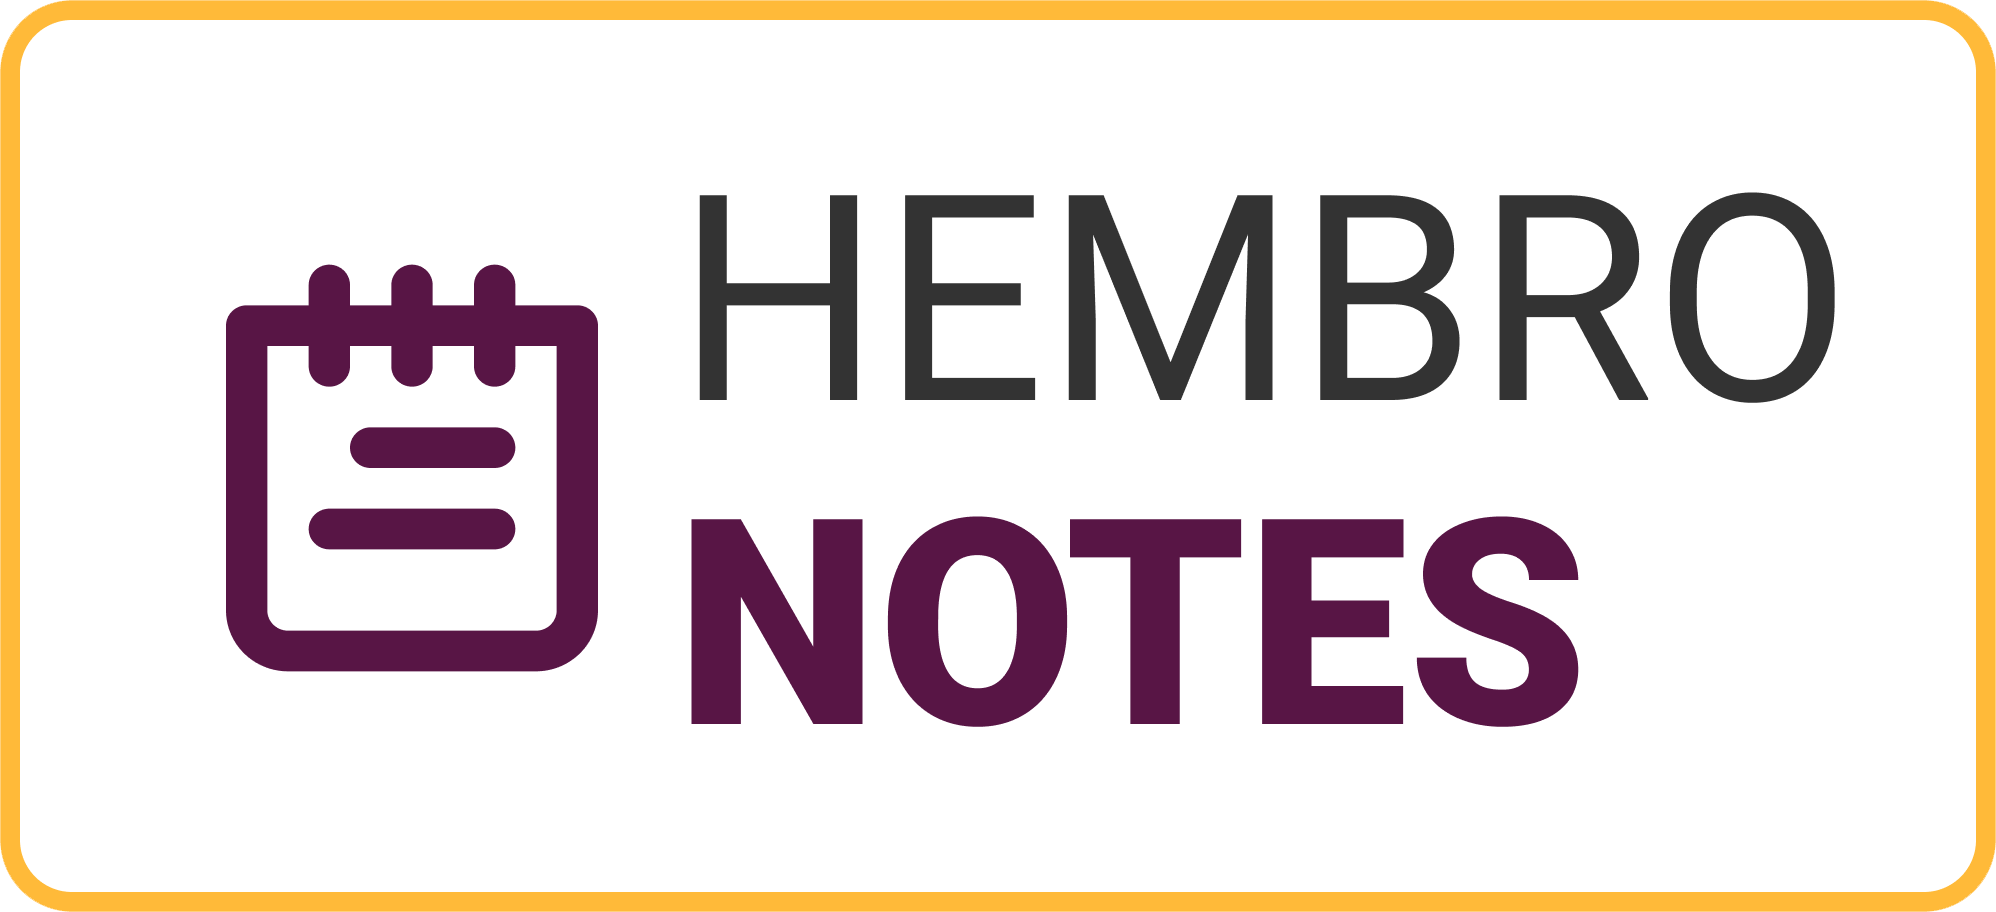 Hembro Notes